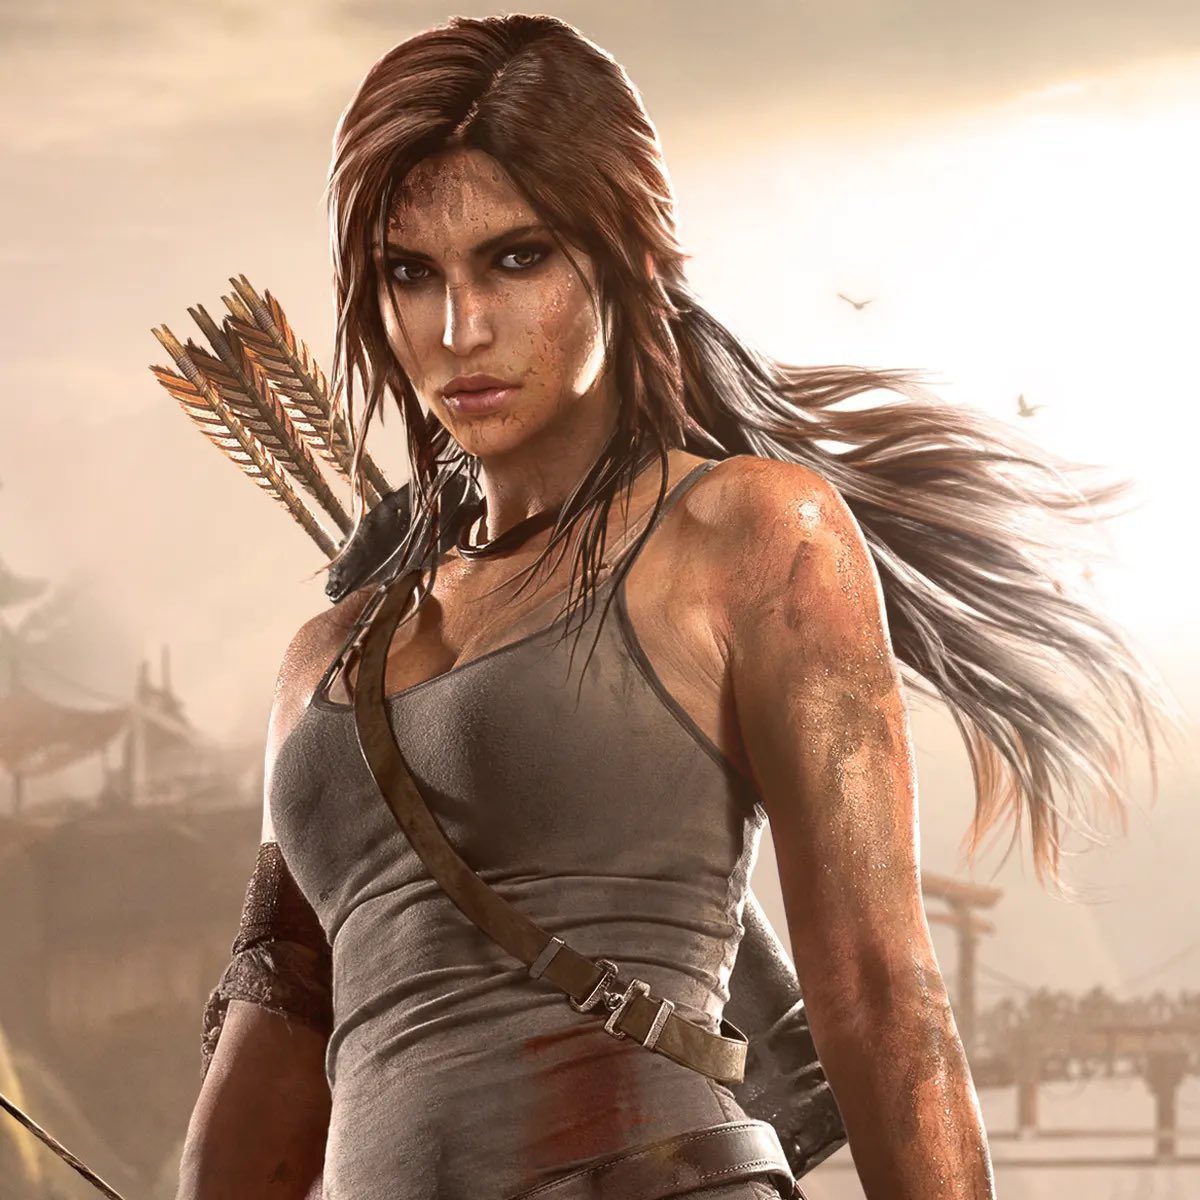 ซีรีส์ TOMB RAIDER พร้อมเดินหน้าแล้วจ้าาา Prime Video ปักหมุดเล็งเริ่มต้นงานสร้างเวอร์ชั่นซีรีส์ของ Lara Croft 

Phoebe Waller Bridge รับหน้าที่อำนวยการสร้าง / มาลุ้นกันว่า Lara Croft เวอร์ชั่นนี้จะเป็นใคร

#LaraCroftTombRaider
#TombRaider
#PrimeVideoTH